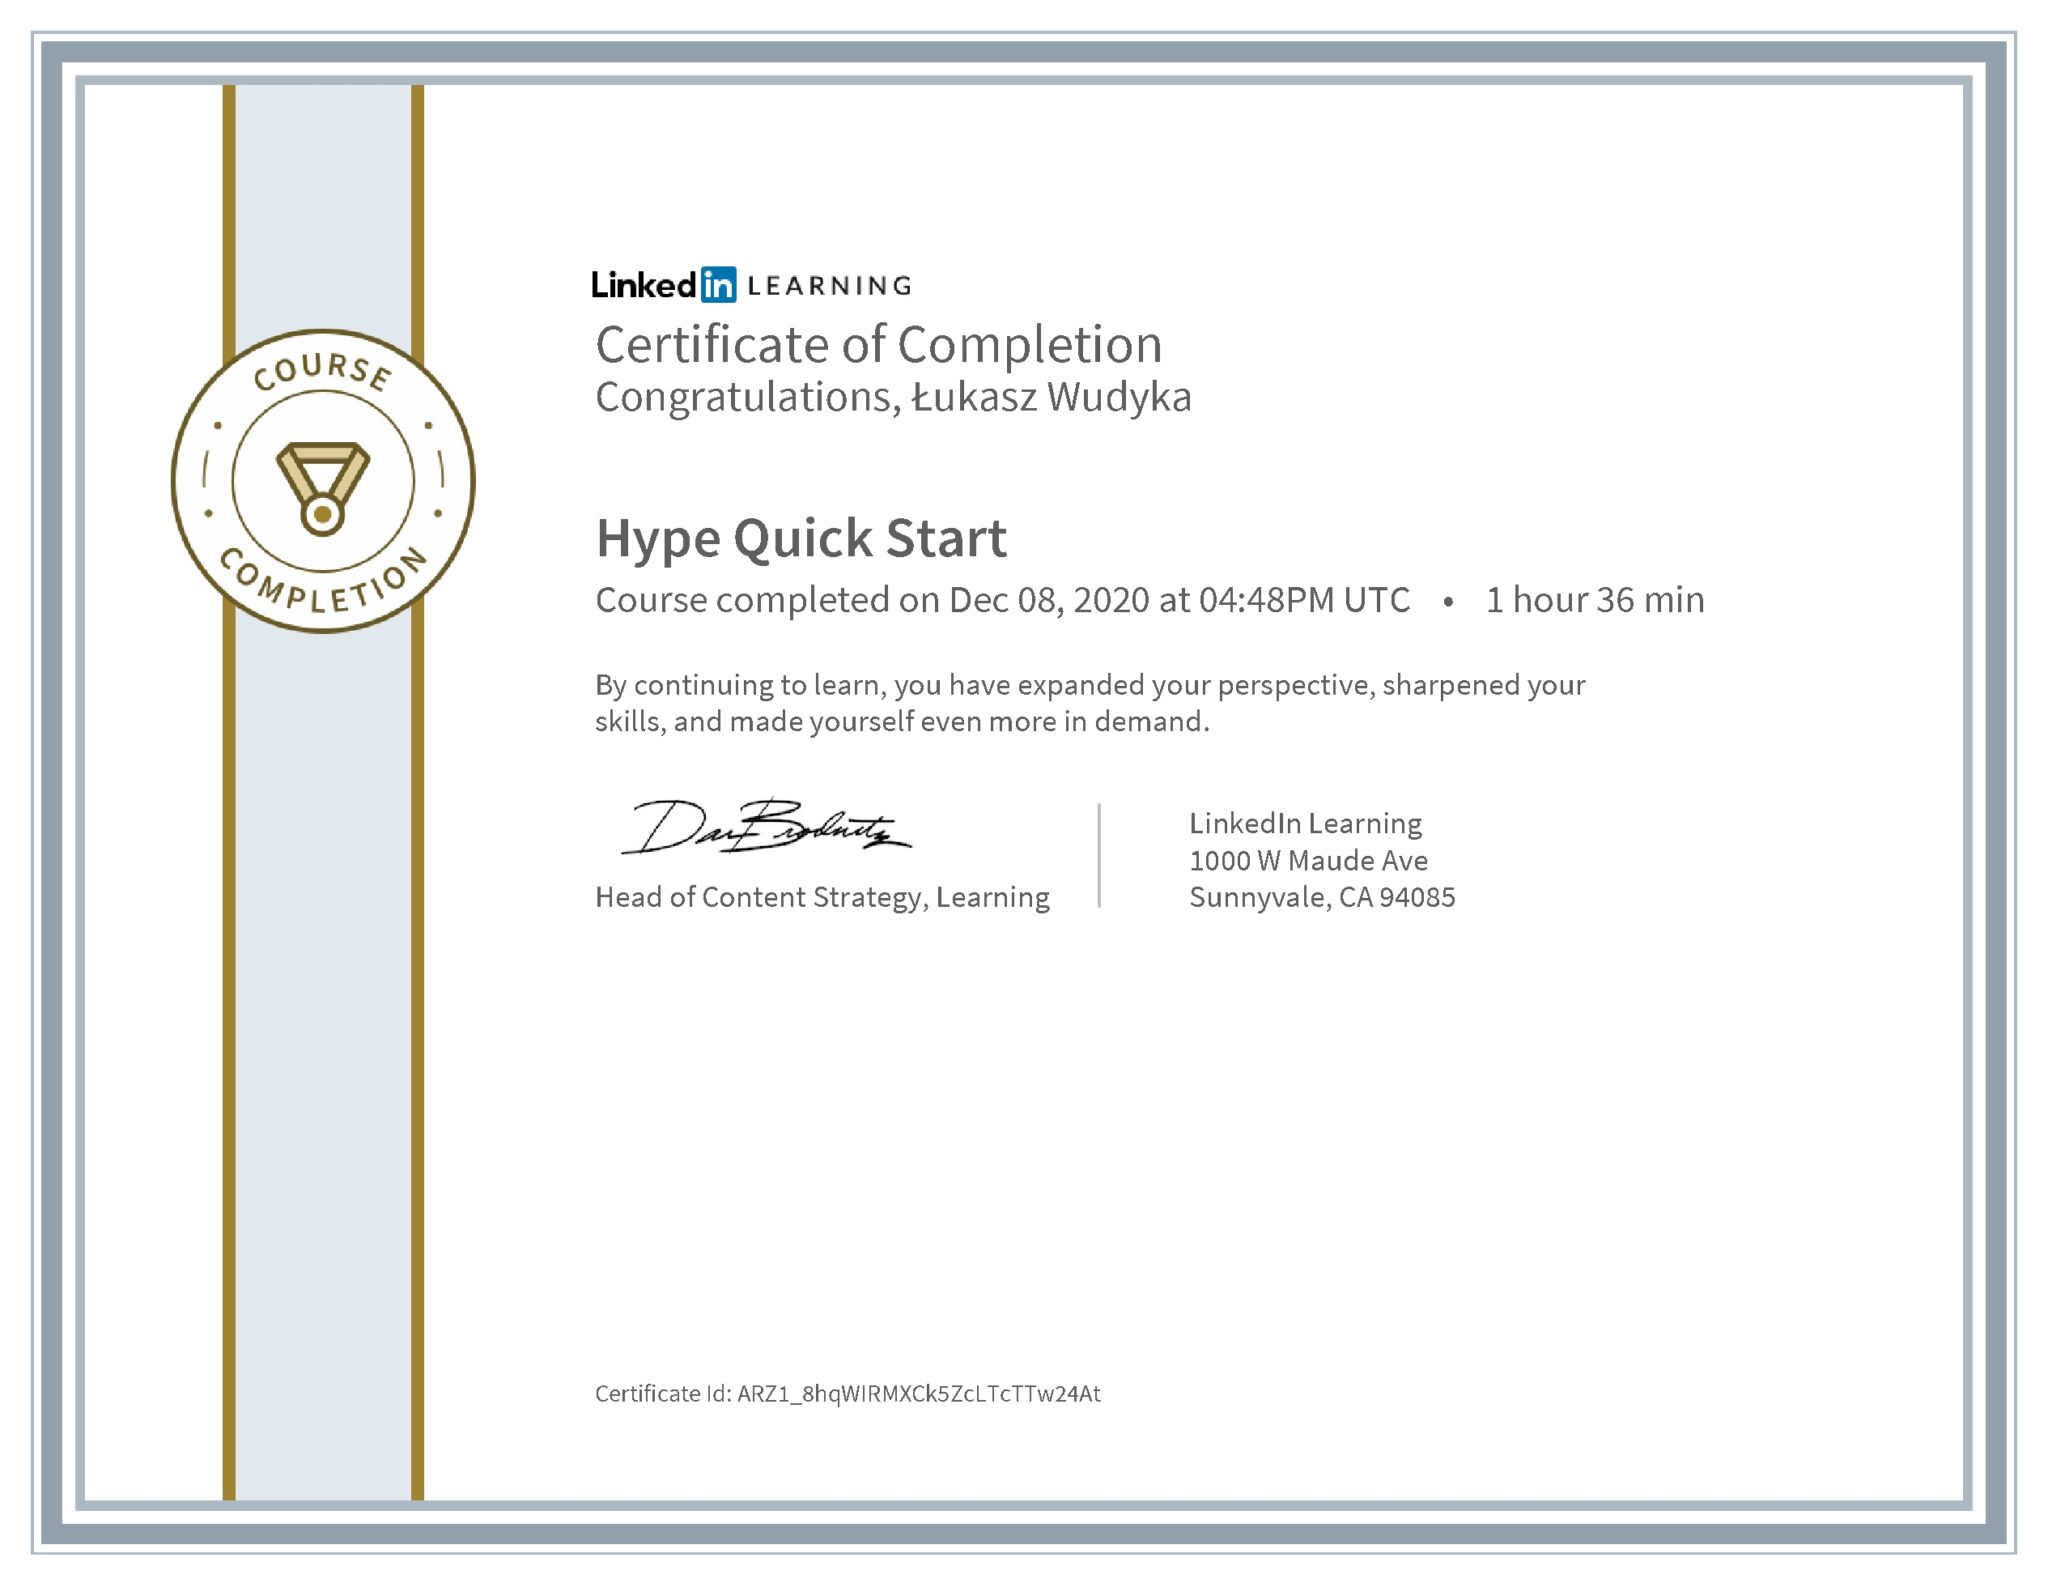 Łukasz Wudyka certyfikat LinkedIn Hype Quick Start